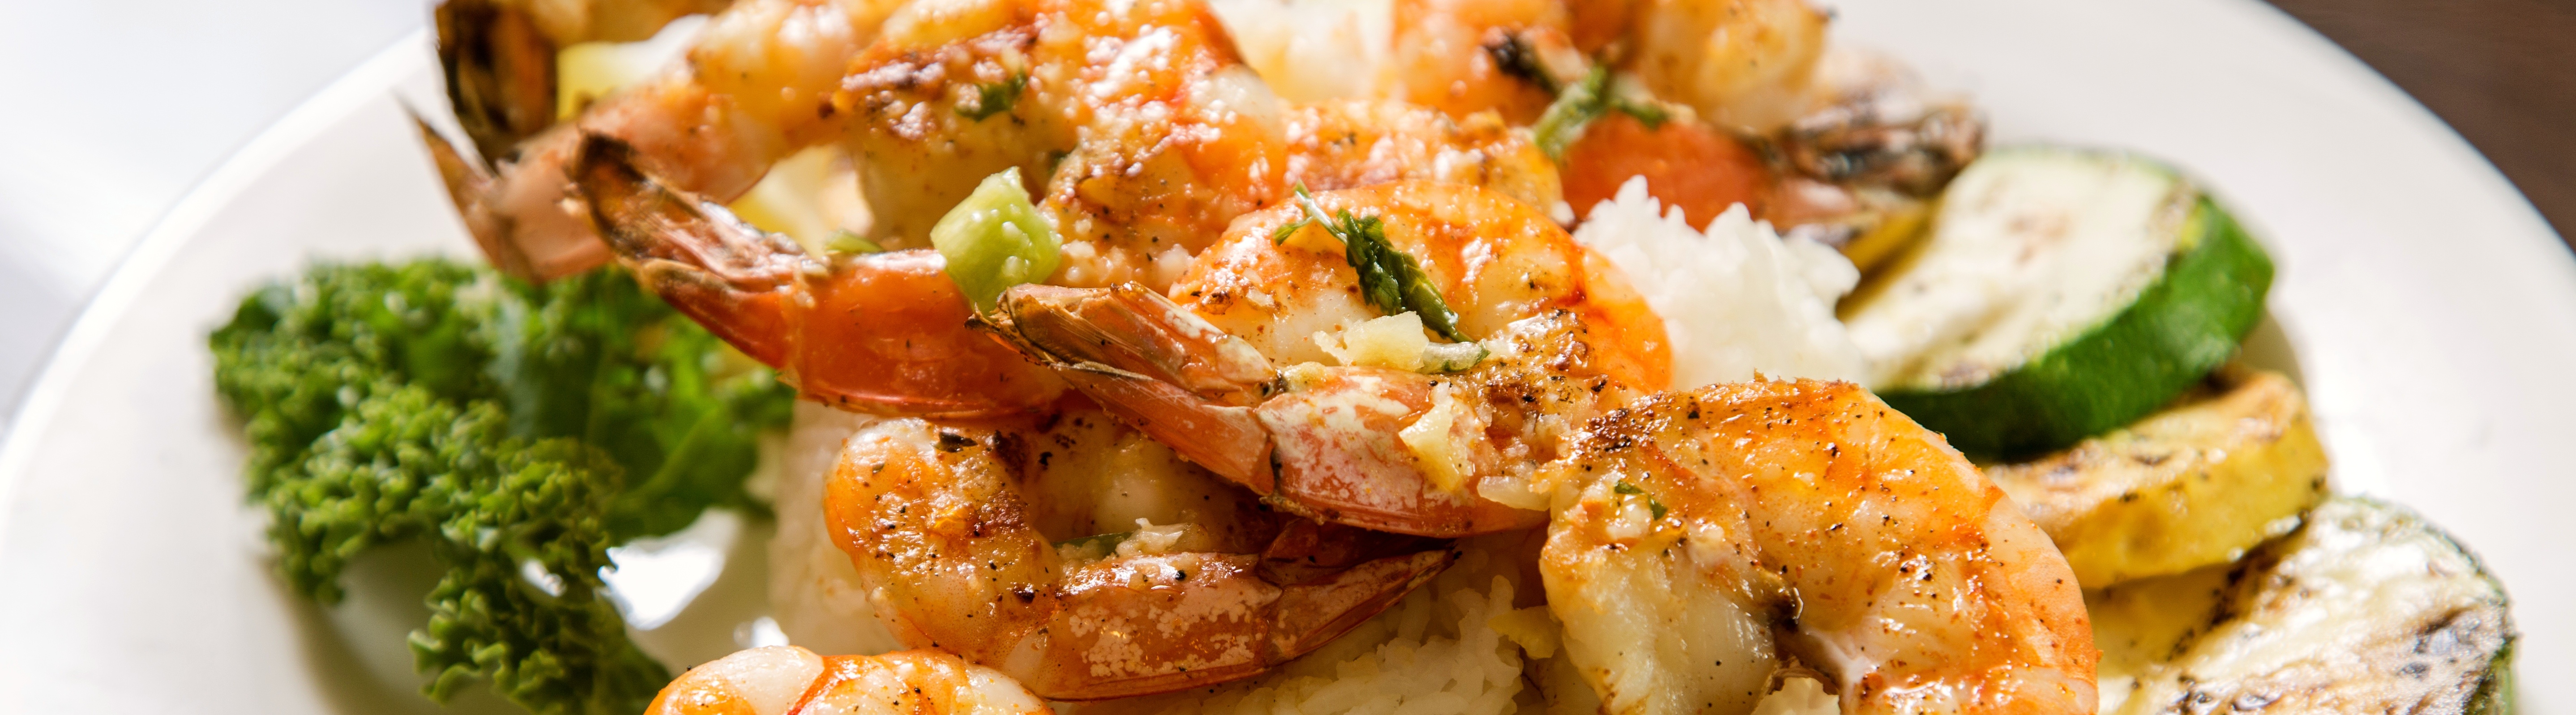 Summer_Shrimp_Recipes_Deanies_Seafood_New_Orleans_Grilled_Shrimp_Kebabs.jpg